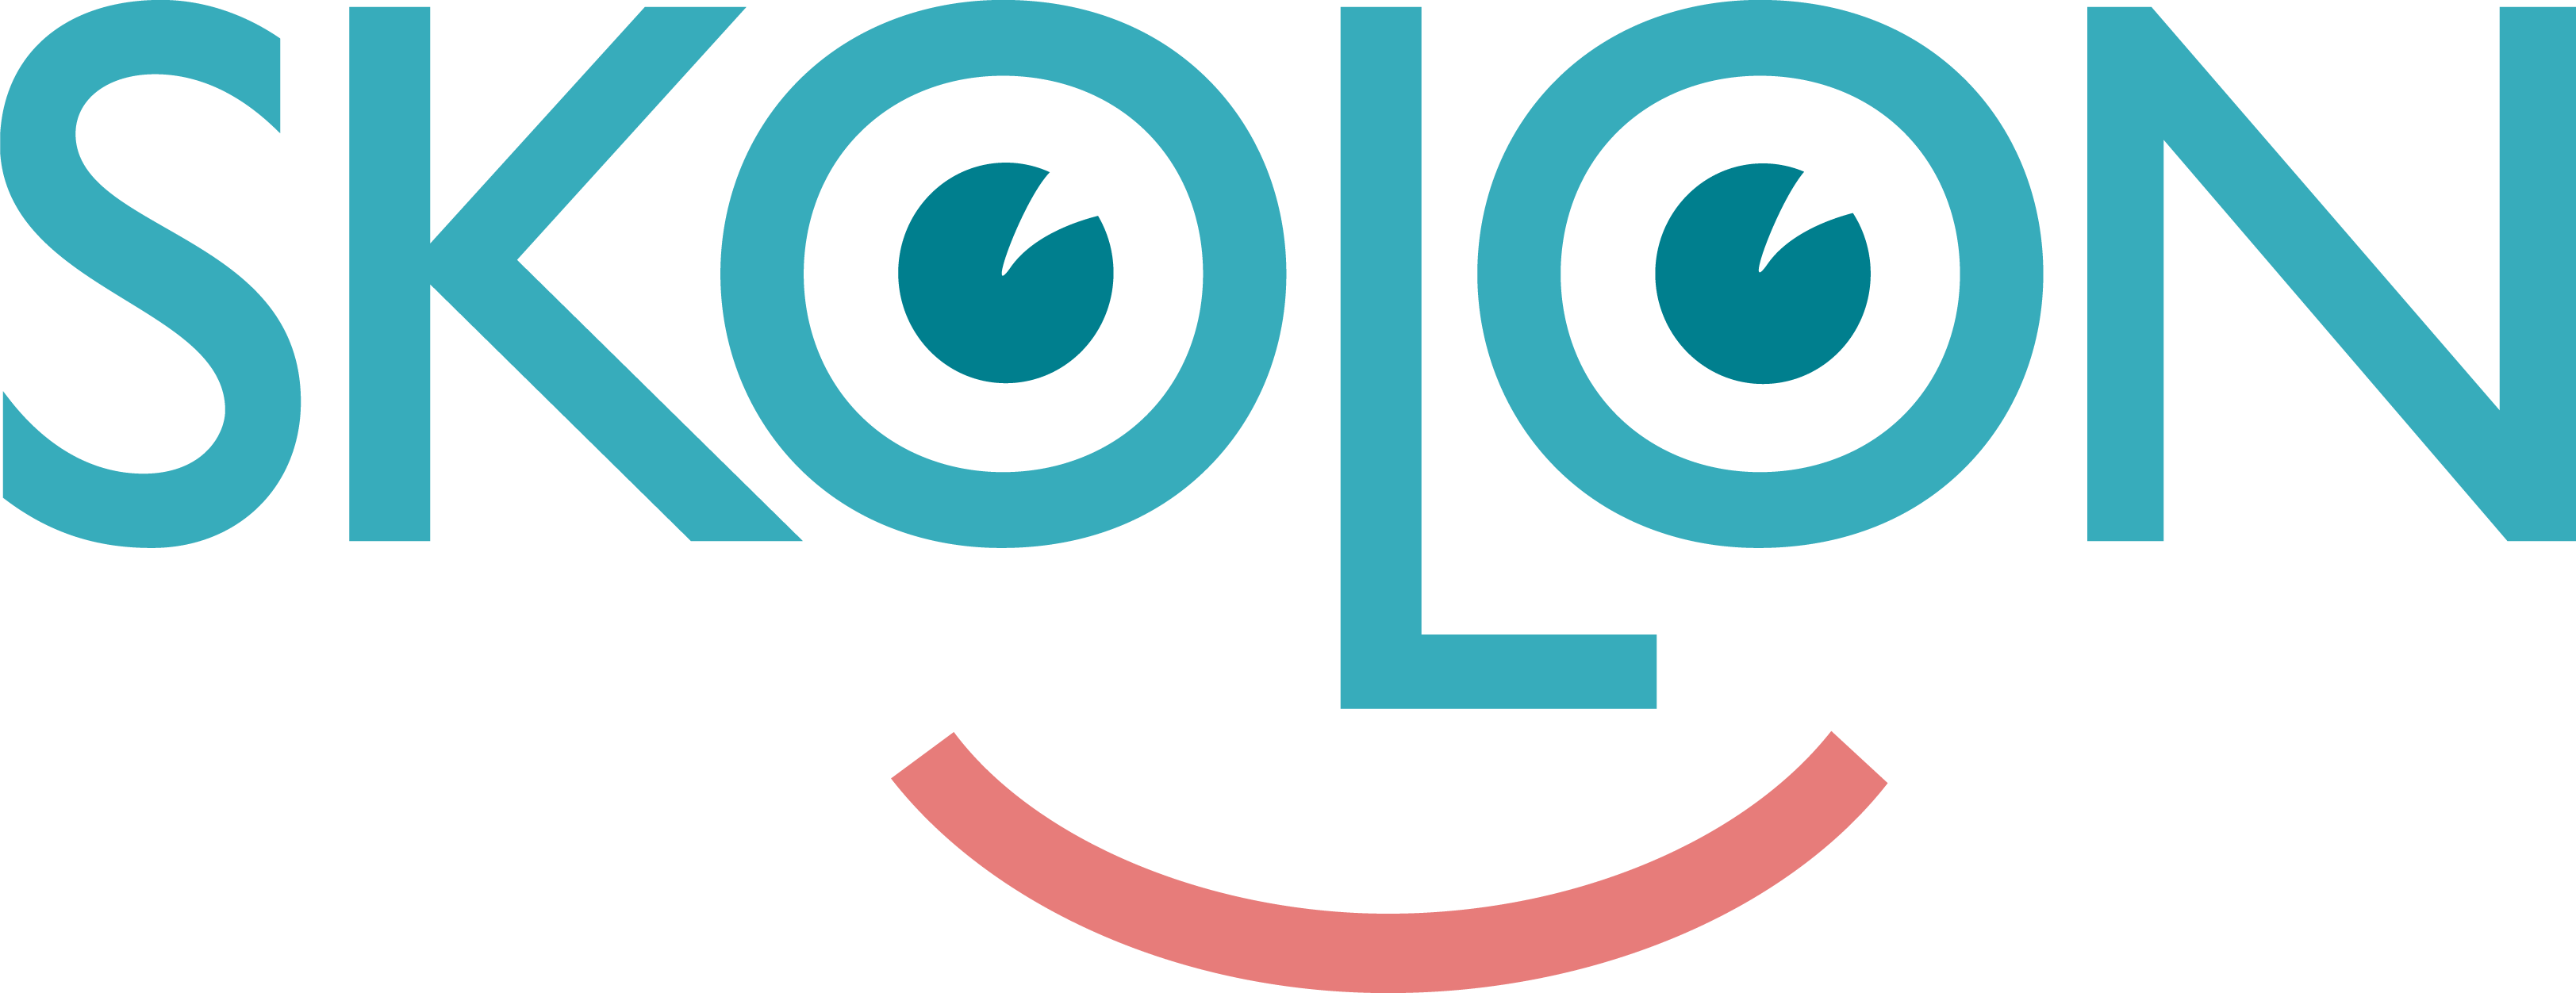 Skolon logotyp